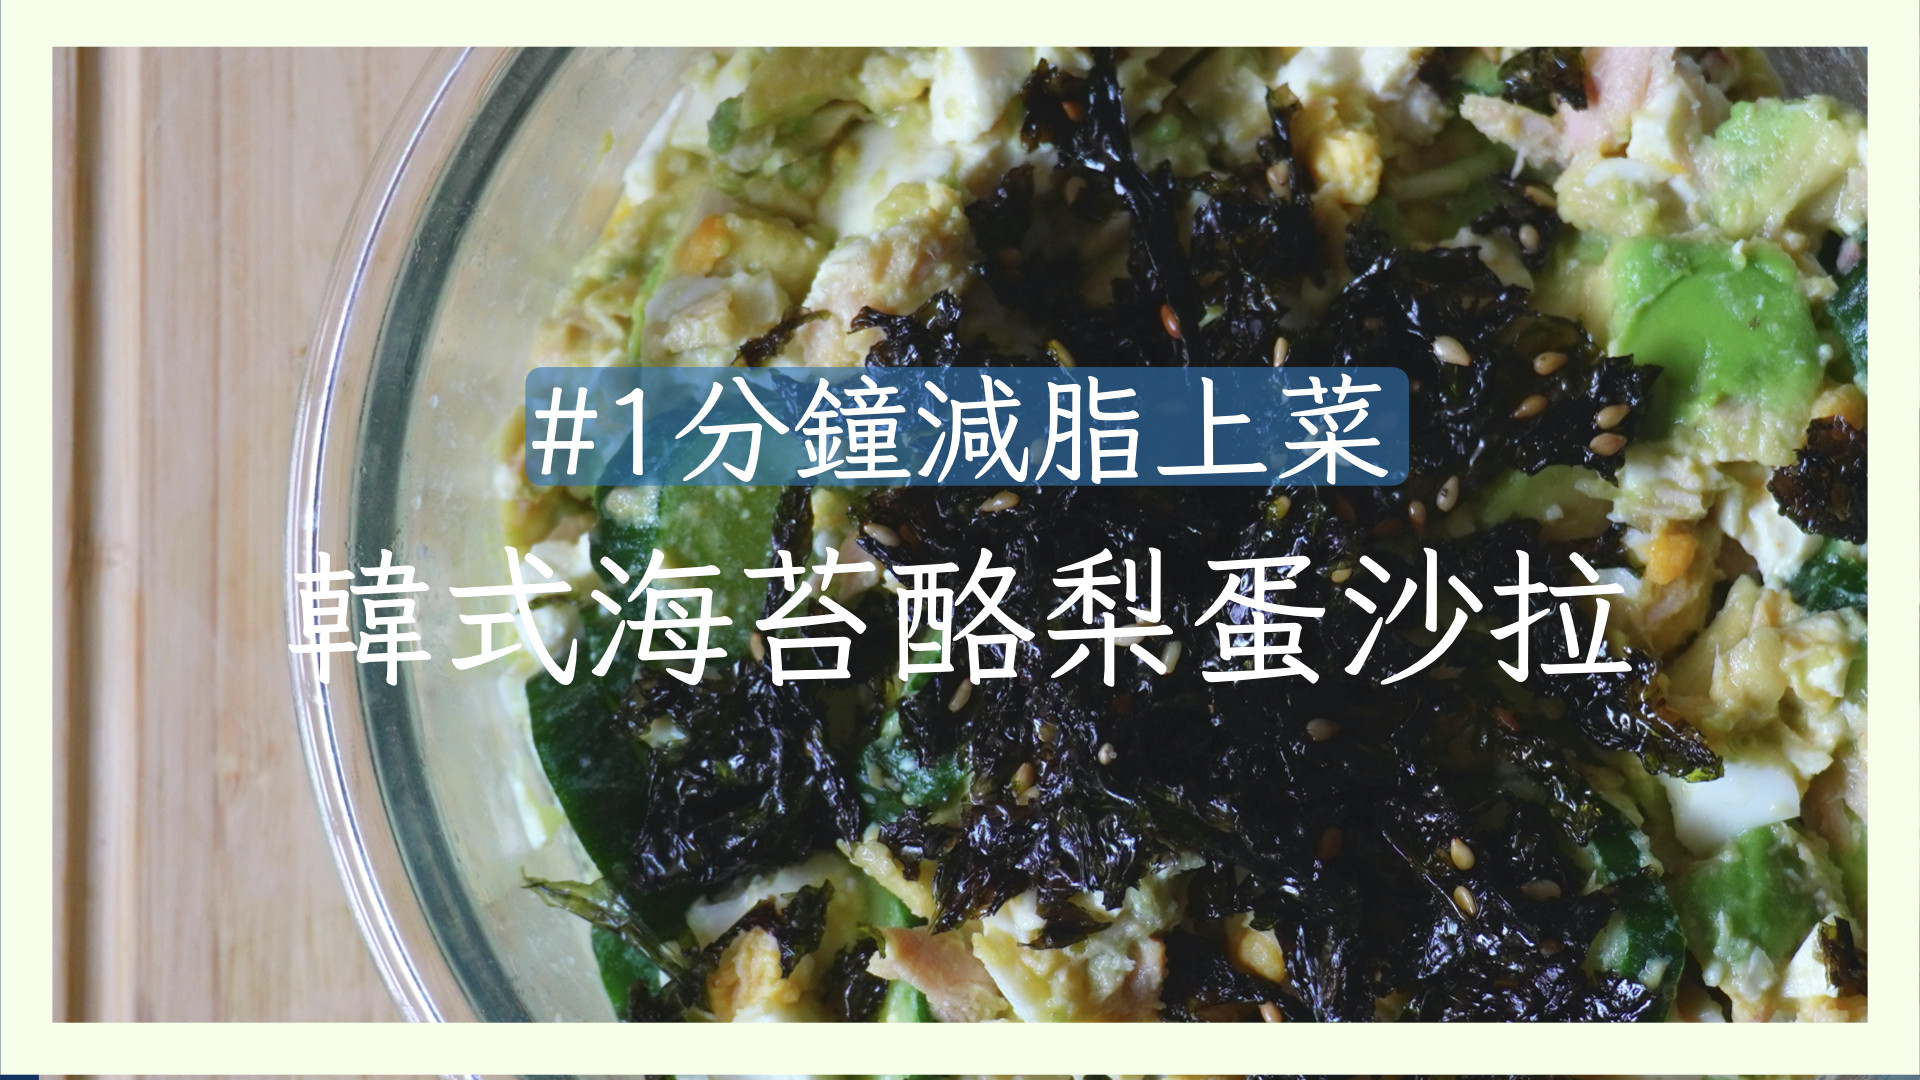 ■韓式海苔酪梨蛋沙拉 #一分鐘減脂料理